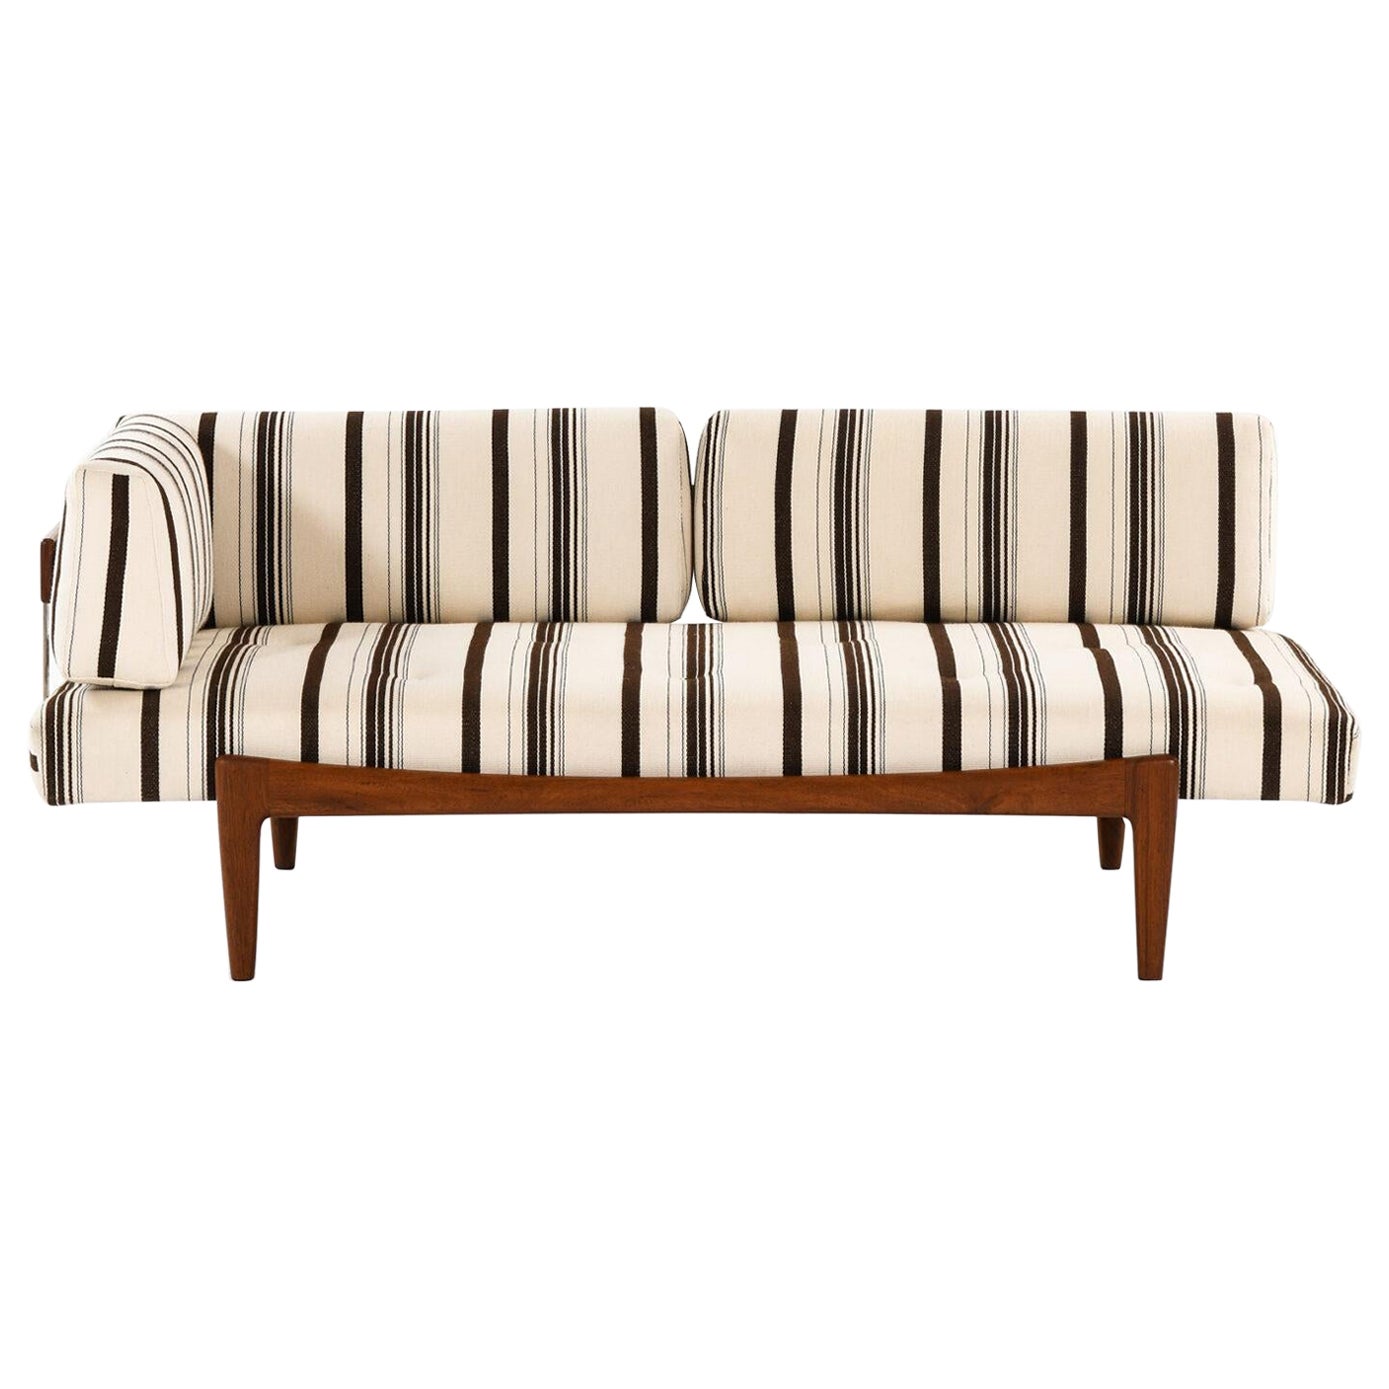  Ib Kofod-Larsen Sofa / Daybed Hergestellt von Seffle Möbelfabrik